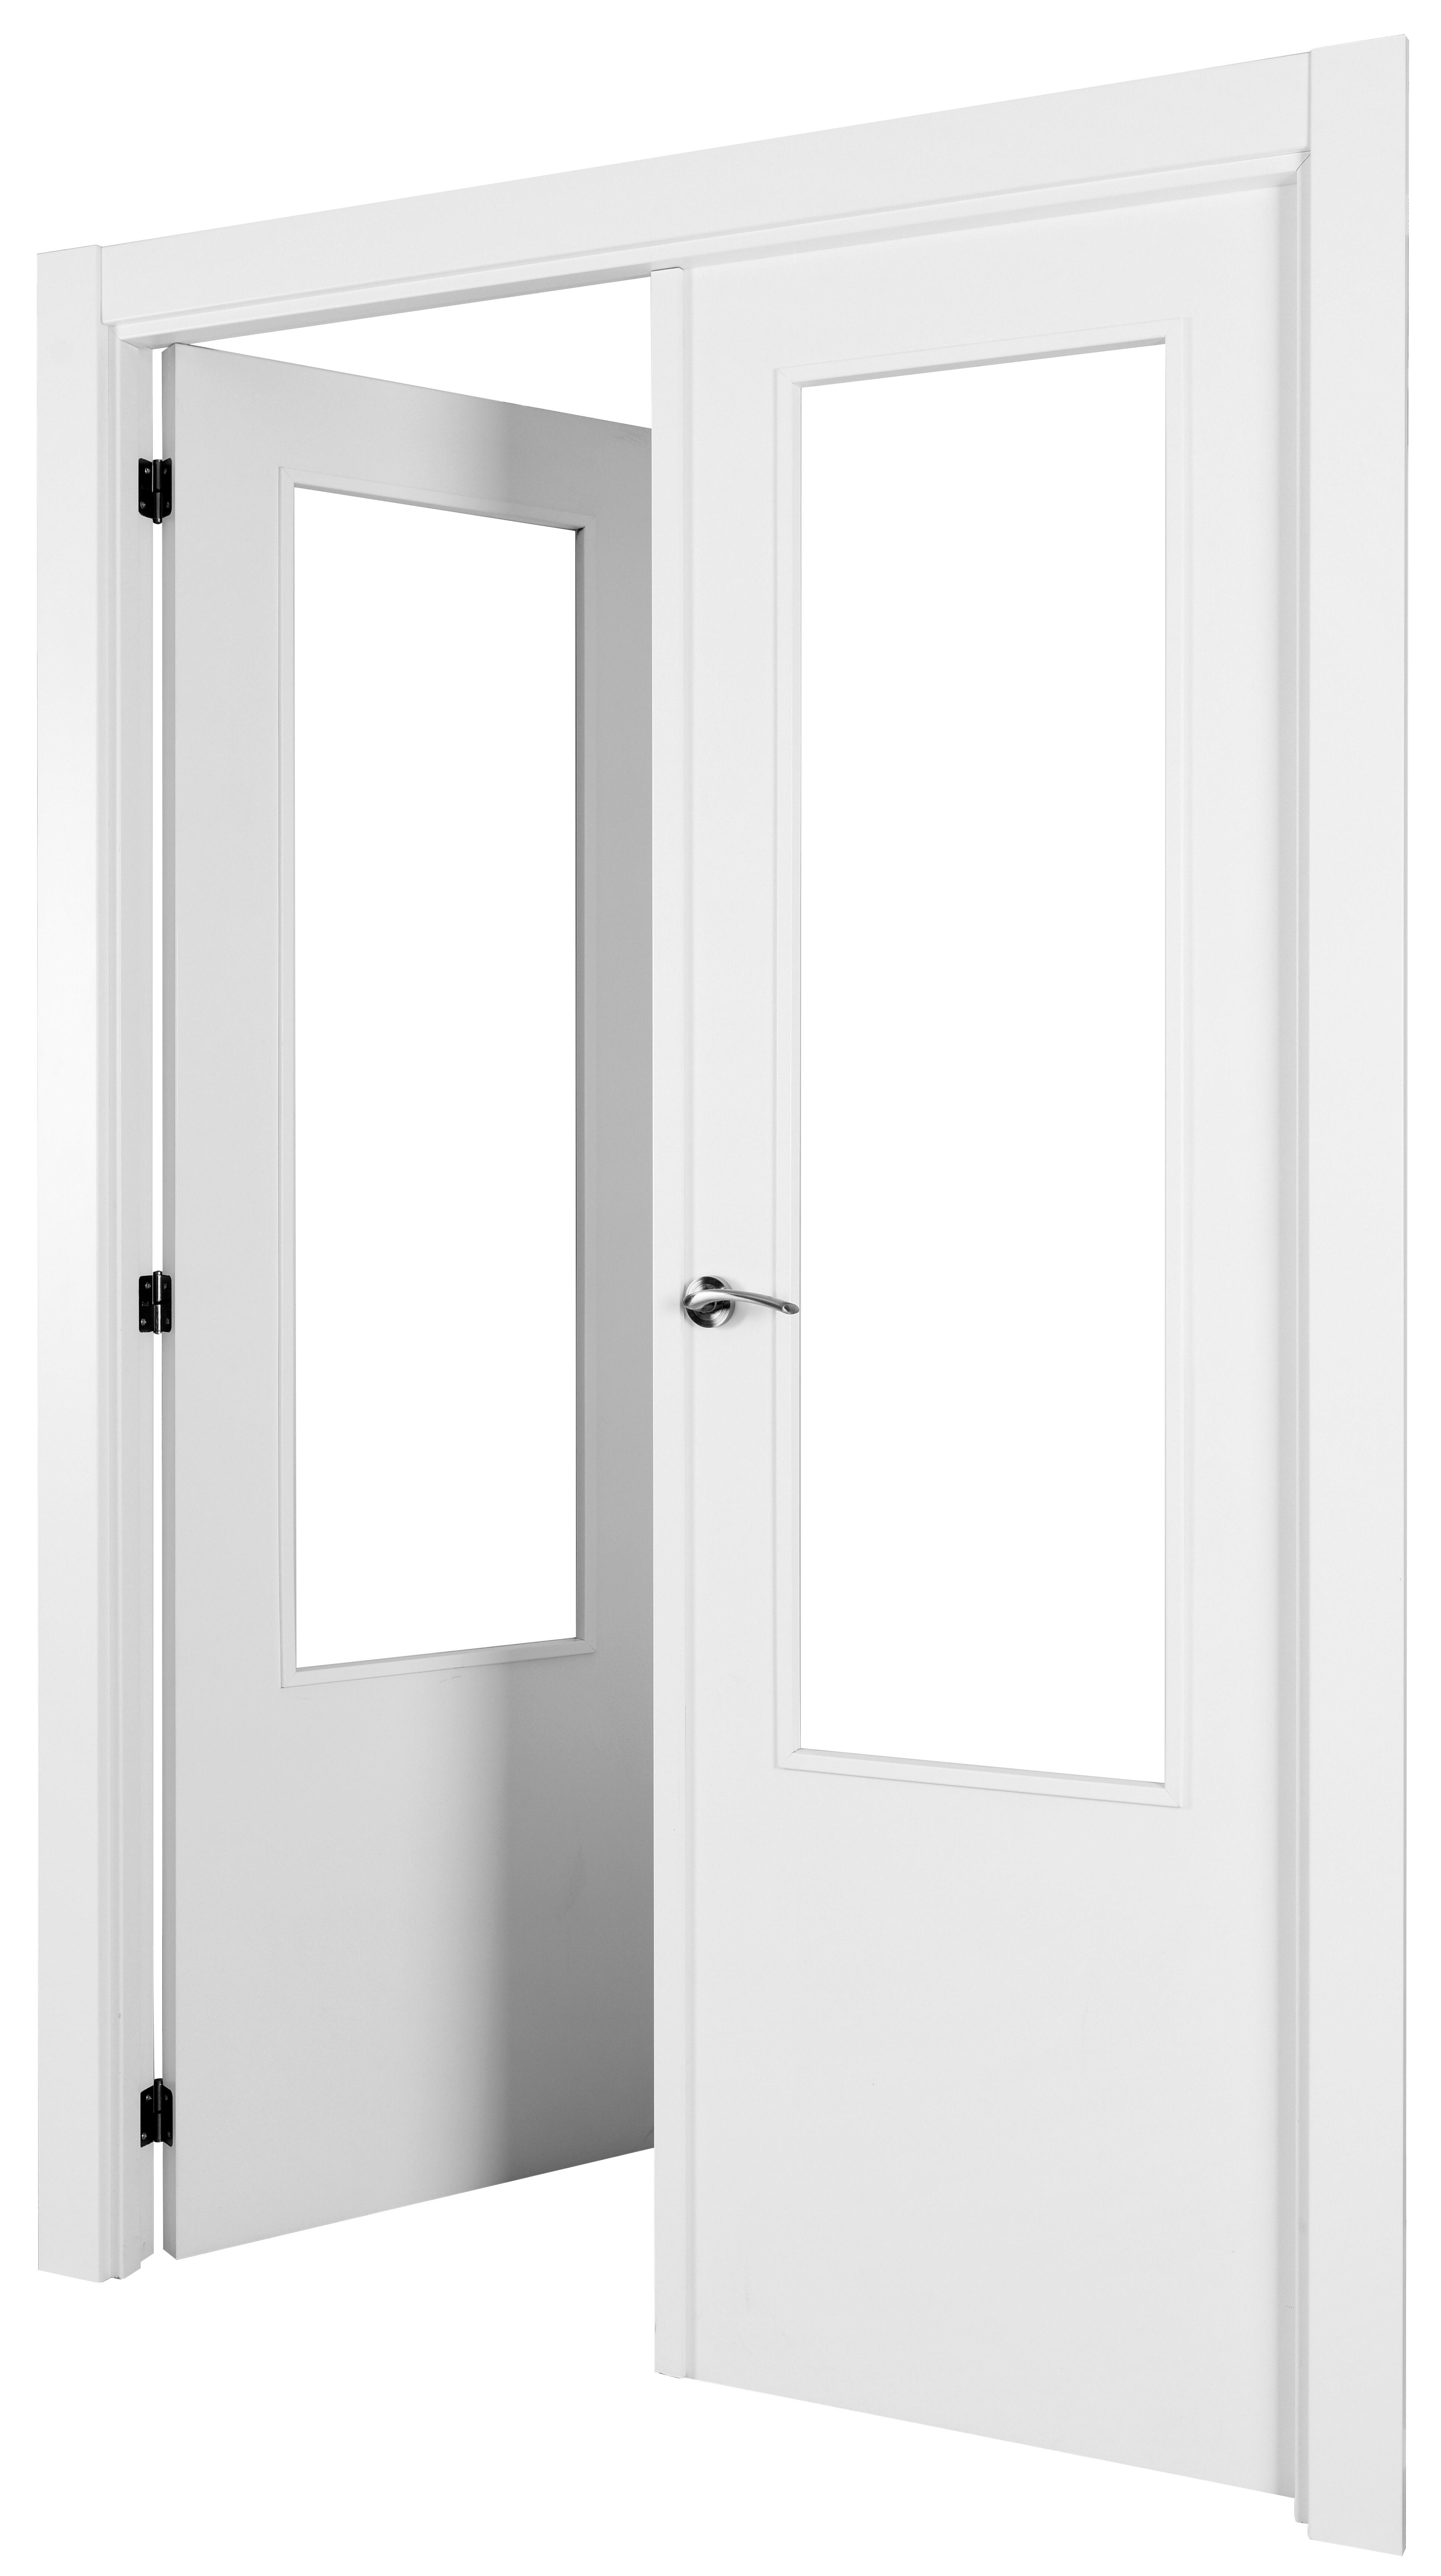 Puerta abatible lyon blanca aero blanco izquierda con cristal de 90x30 y 105cm